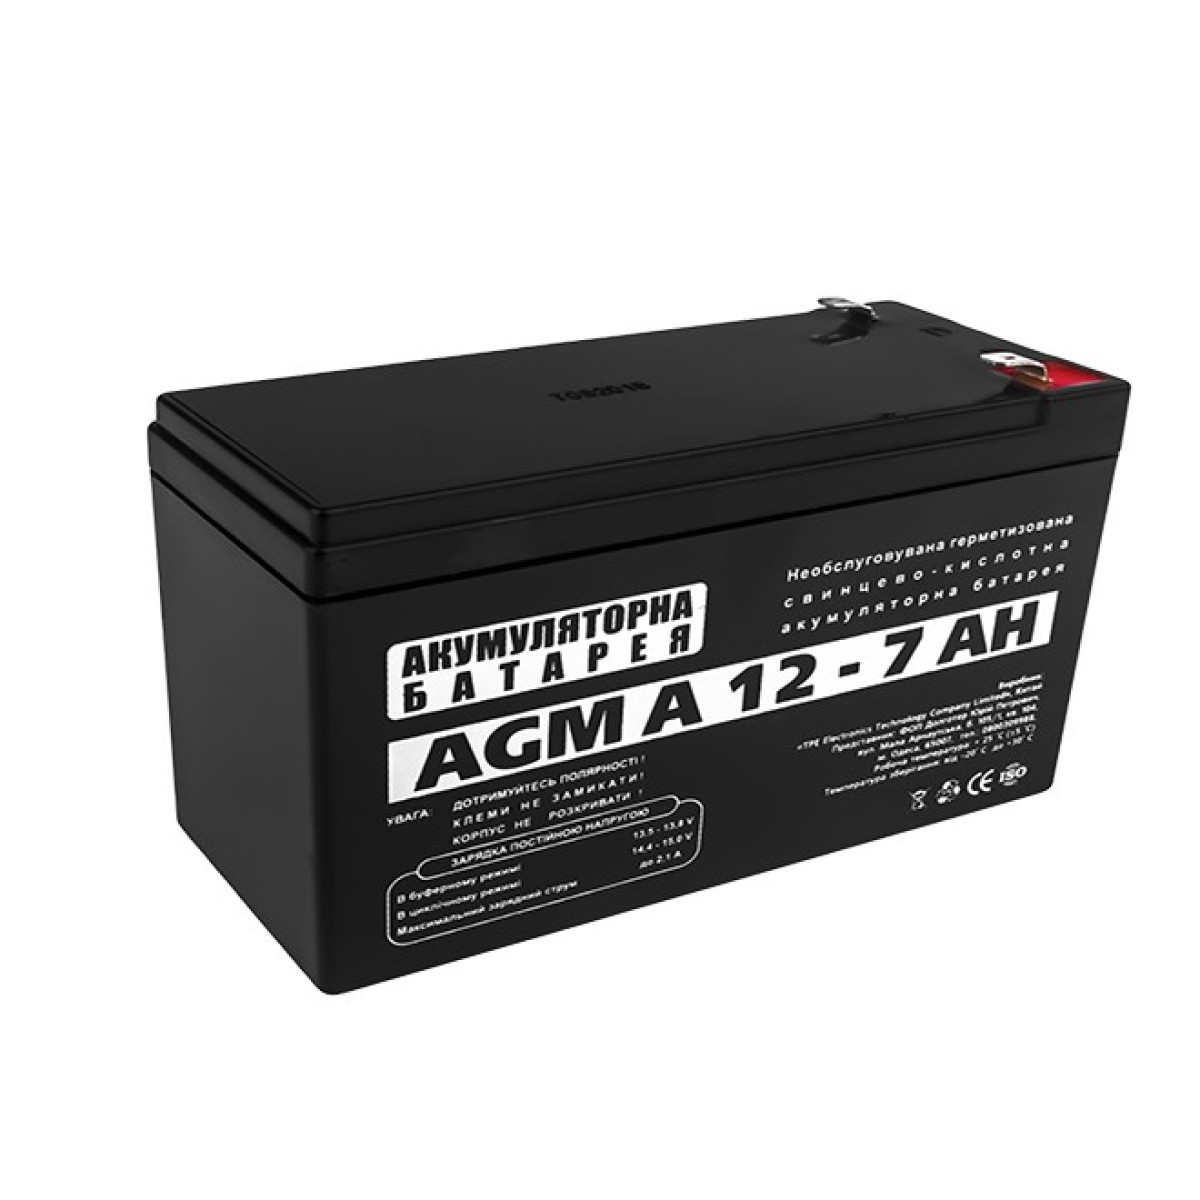 Аккумуляторная батарея LogicPower AGM А 12 – 7 AH 256_256.jpg